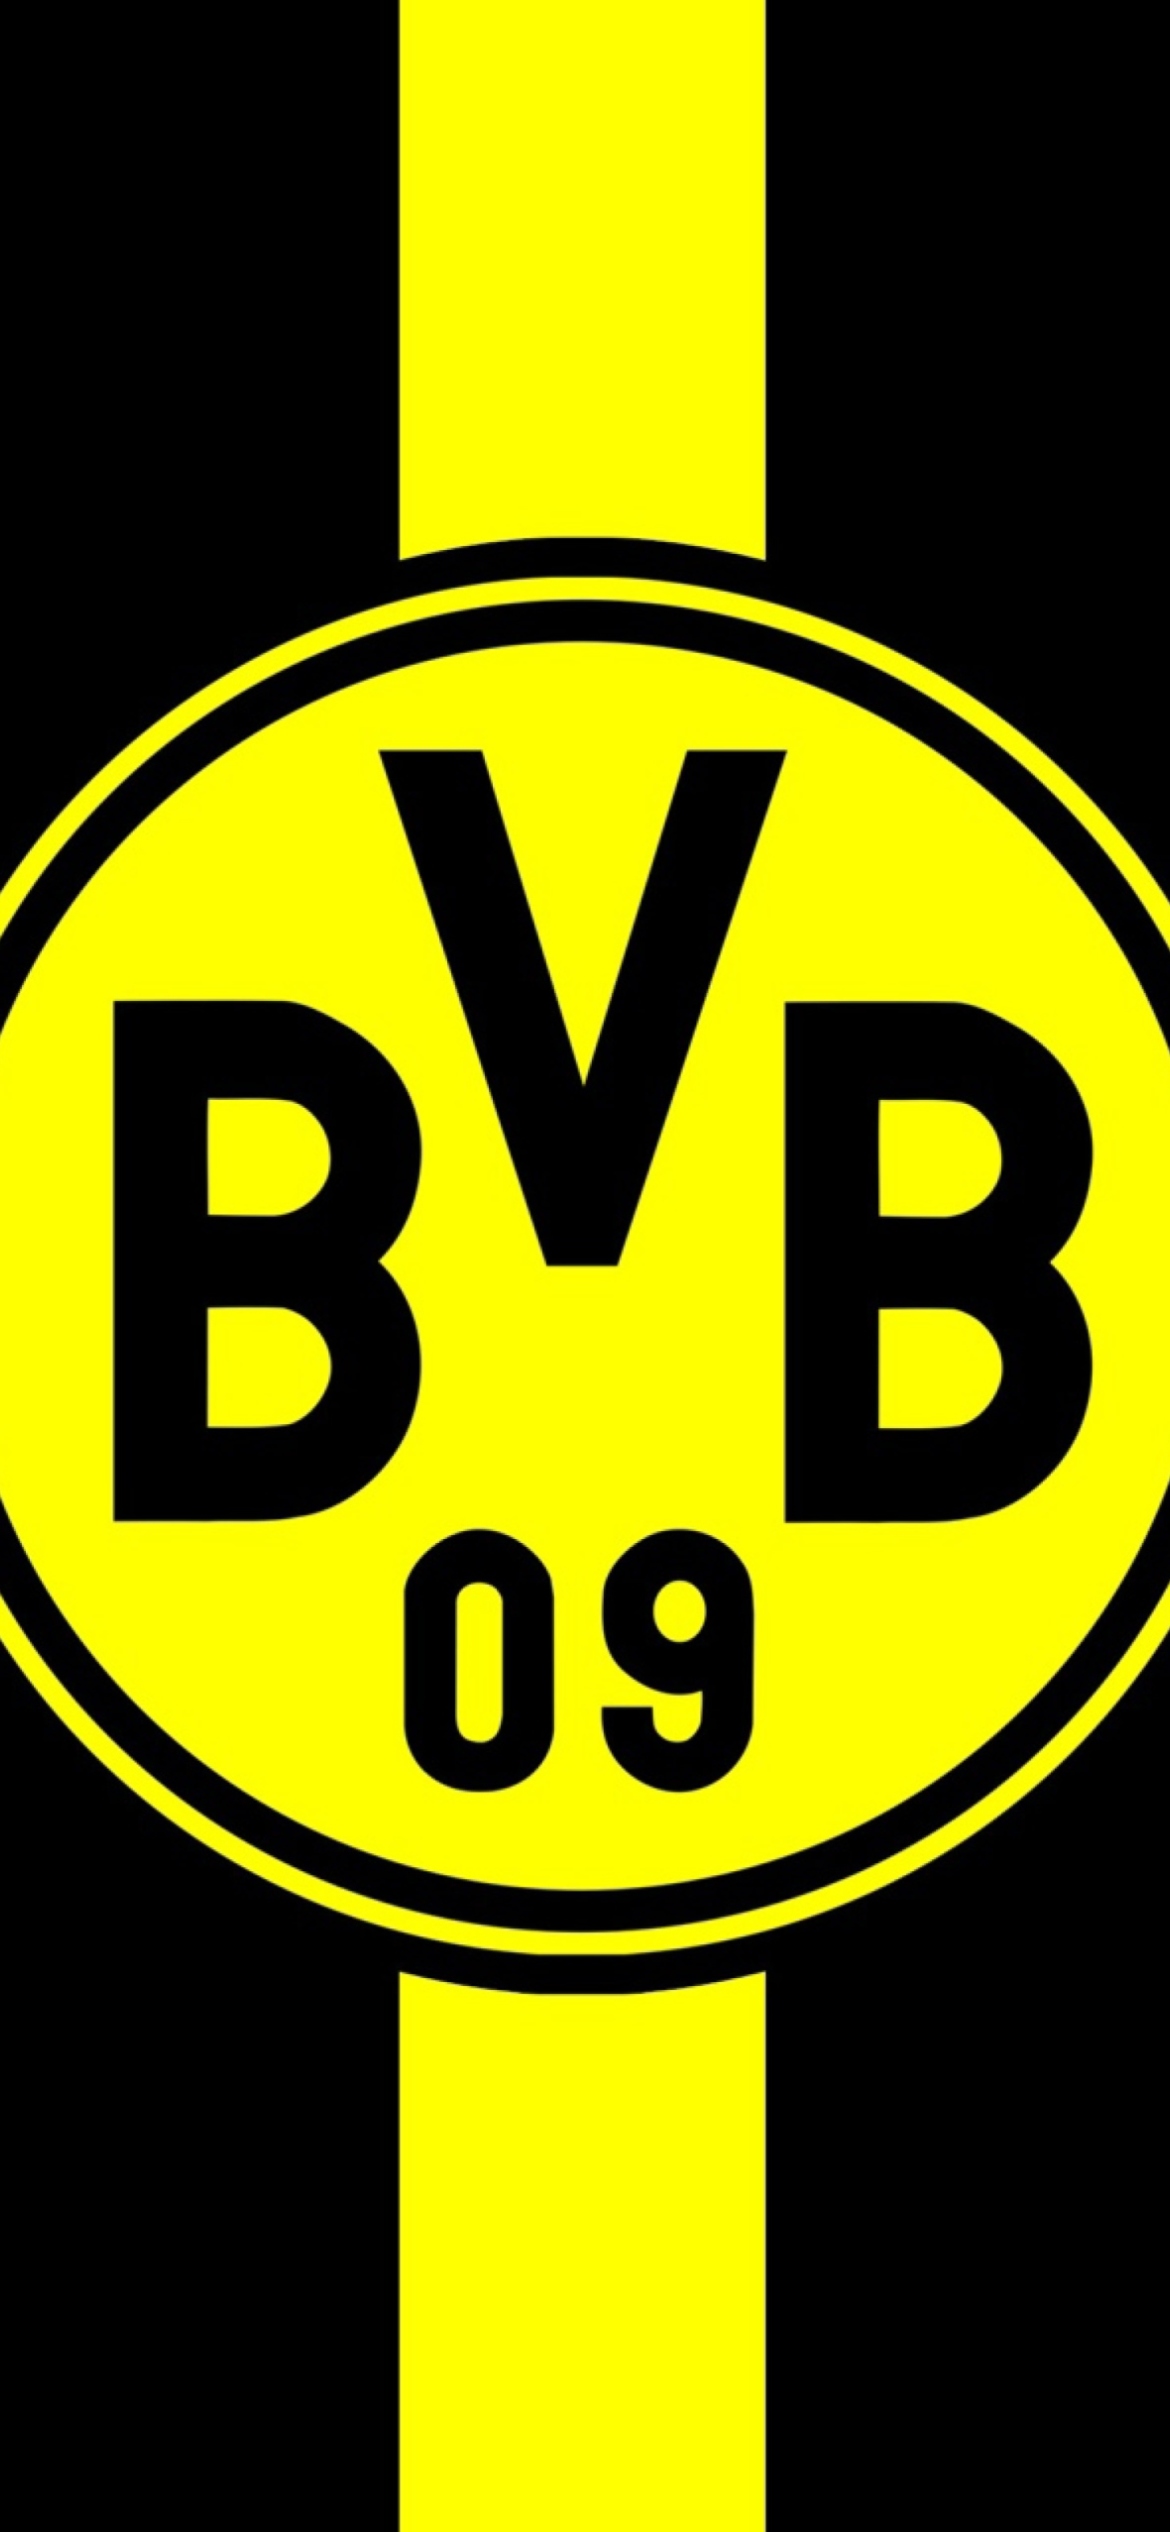 Borussia Dortmund (BVB) wallpaper 1170x2532